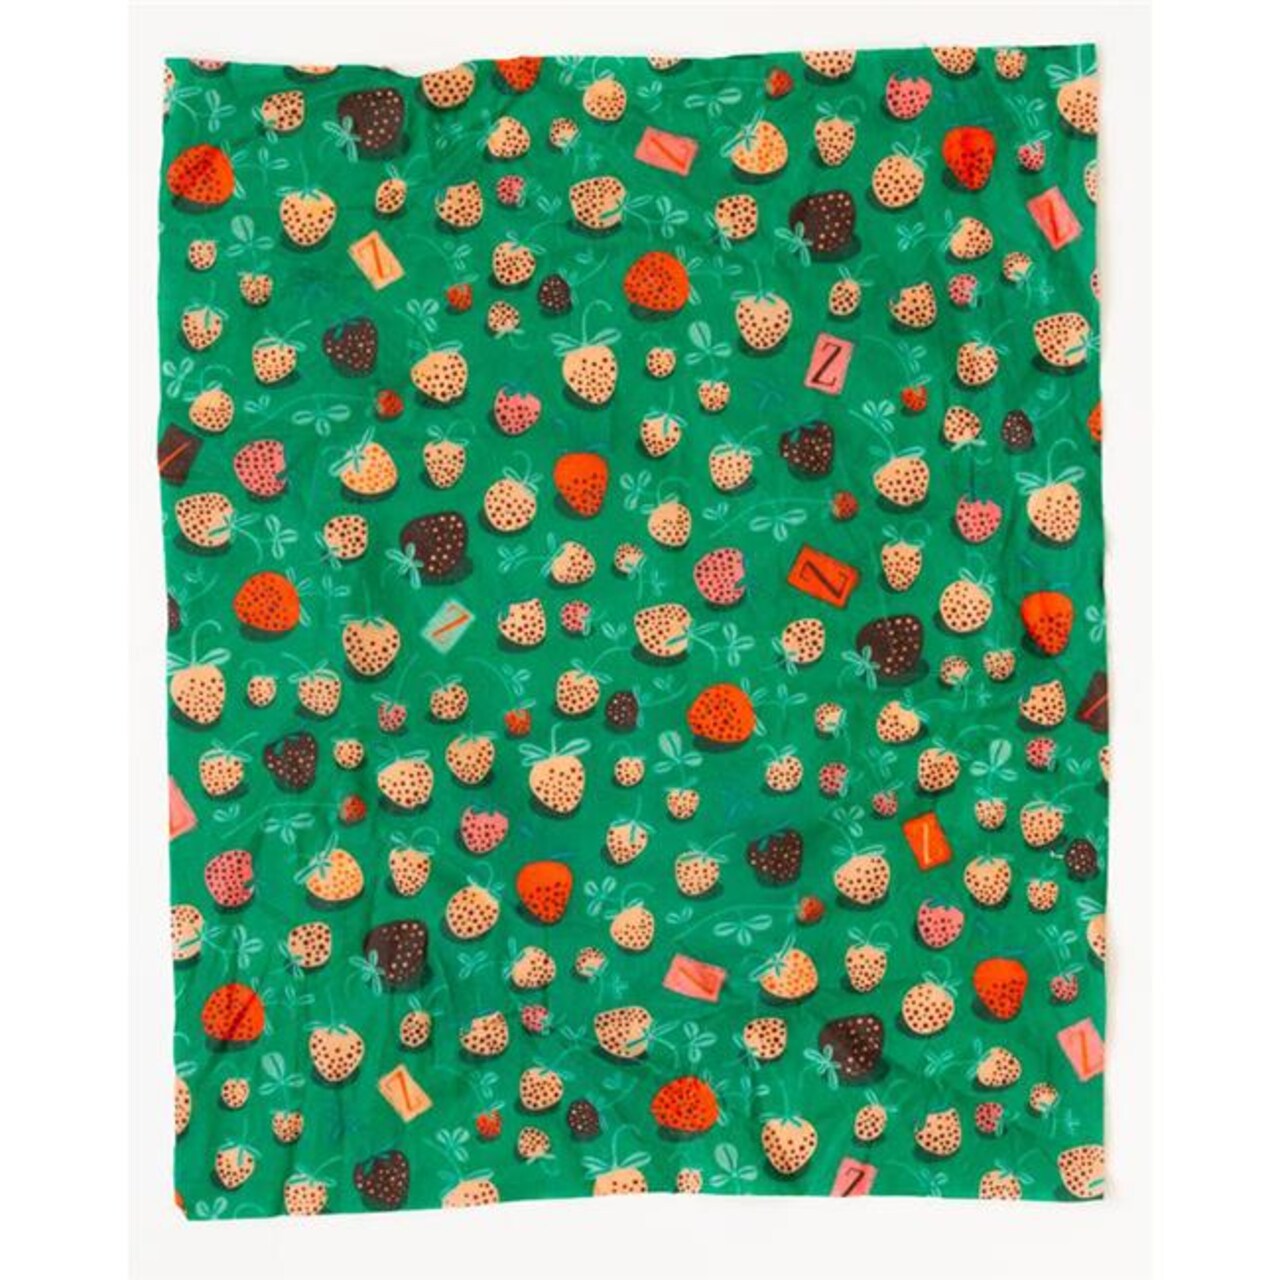 Z Wraps 236937 12 x 12 in. Beeswax Wrap, Medium - Strawberry Fields Print